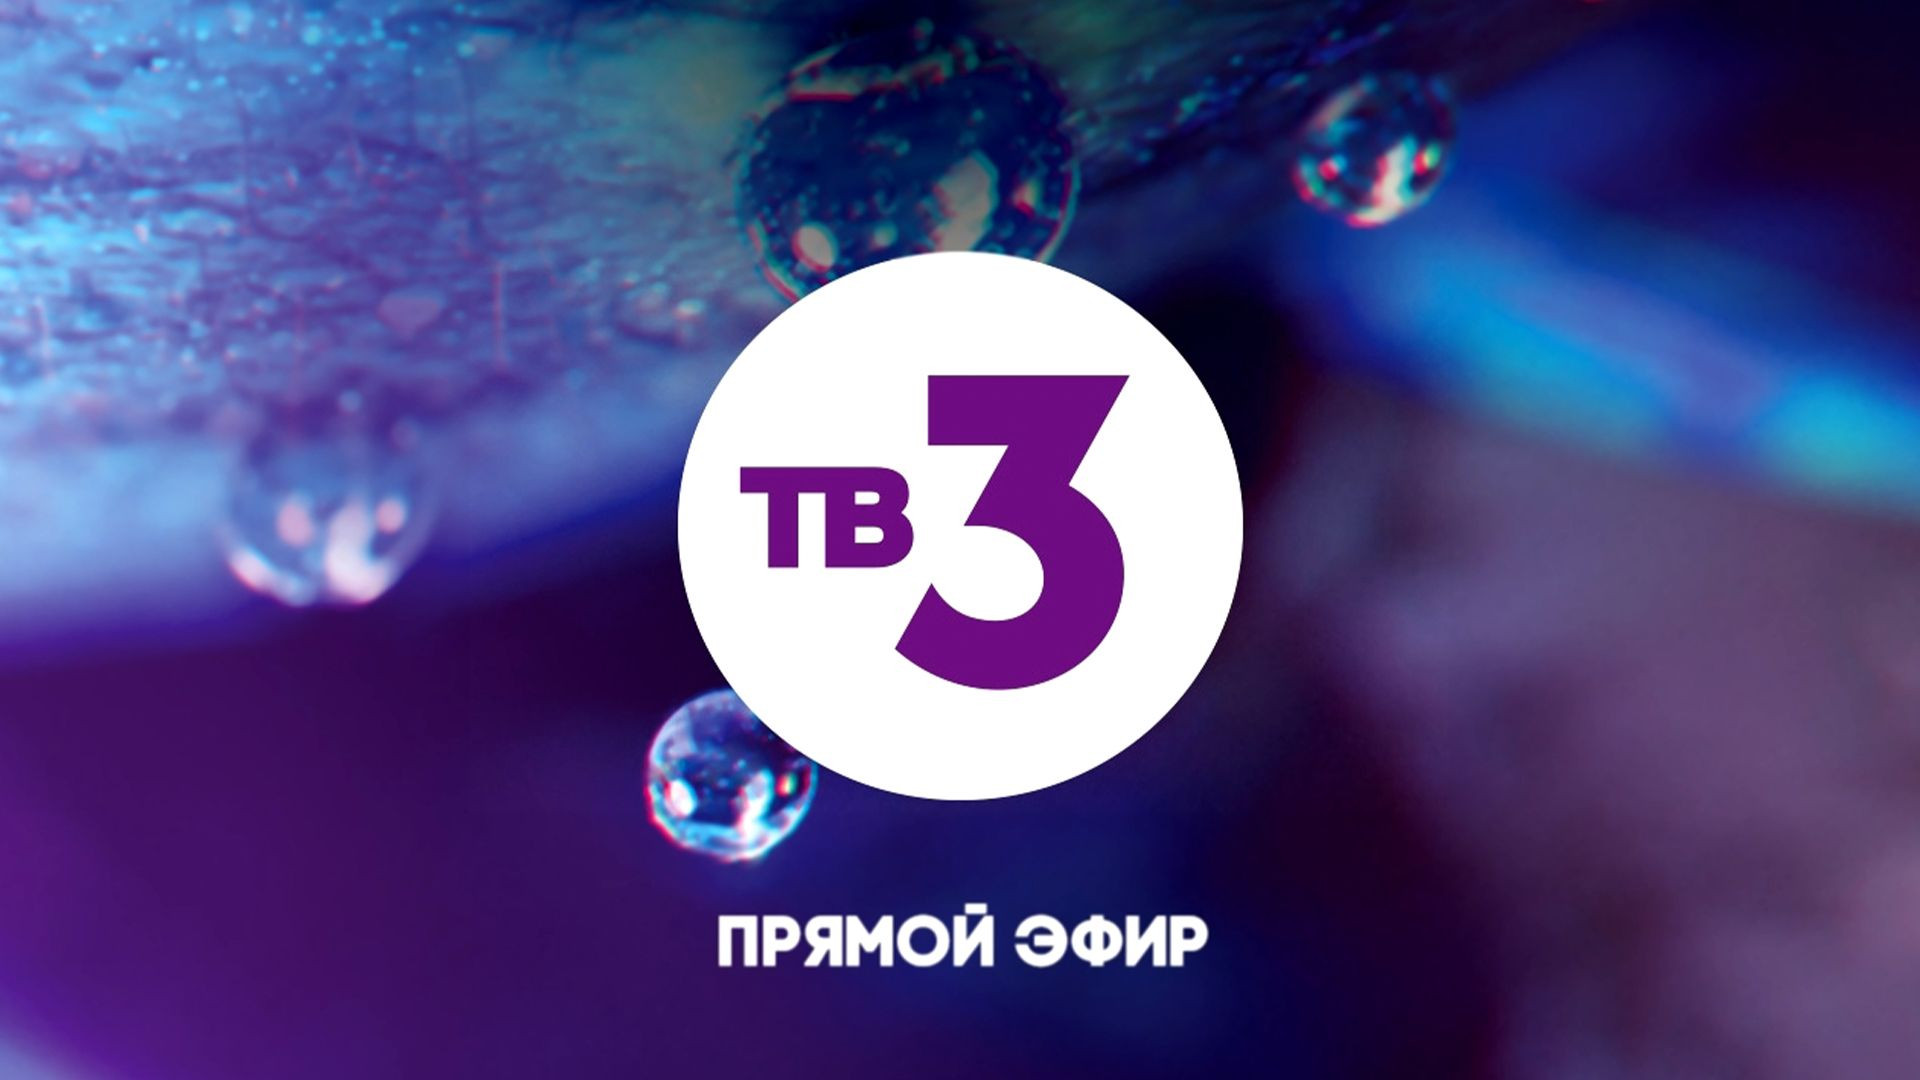 Трансляция 3 канала. Канал тв3 прямой эфир. Телеканал тв3. Тв3 логотип. Телеканал 3 канал.